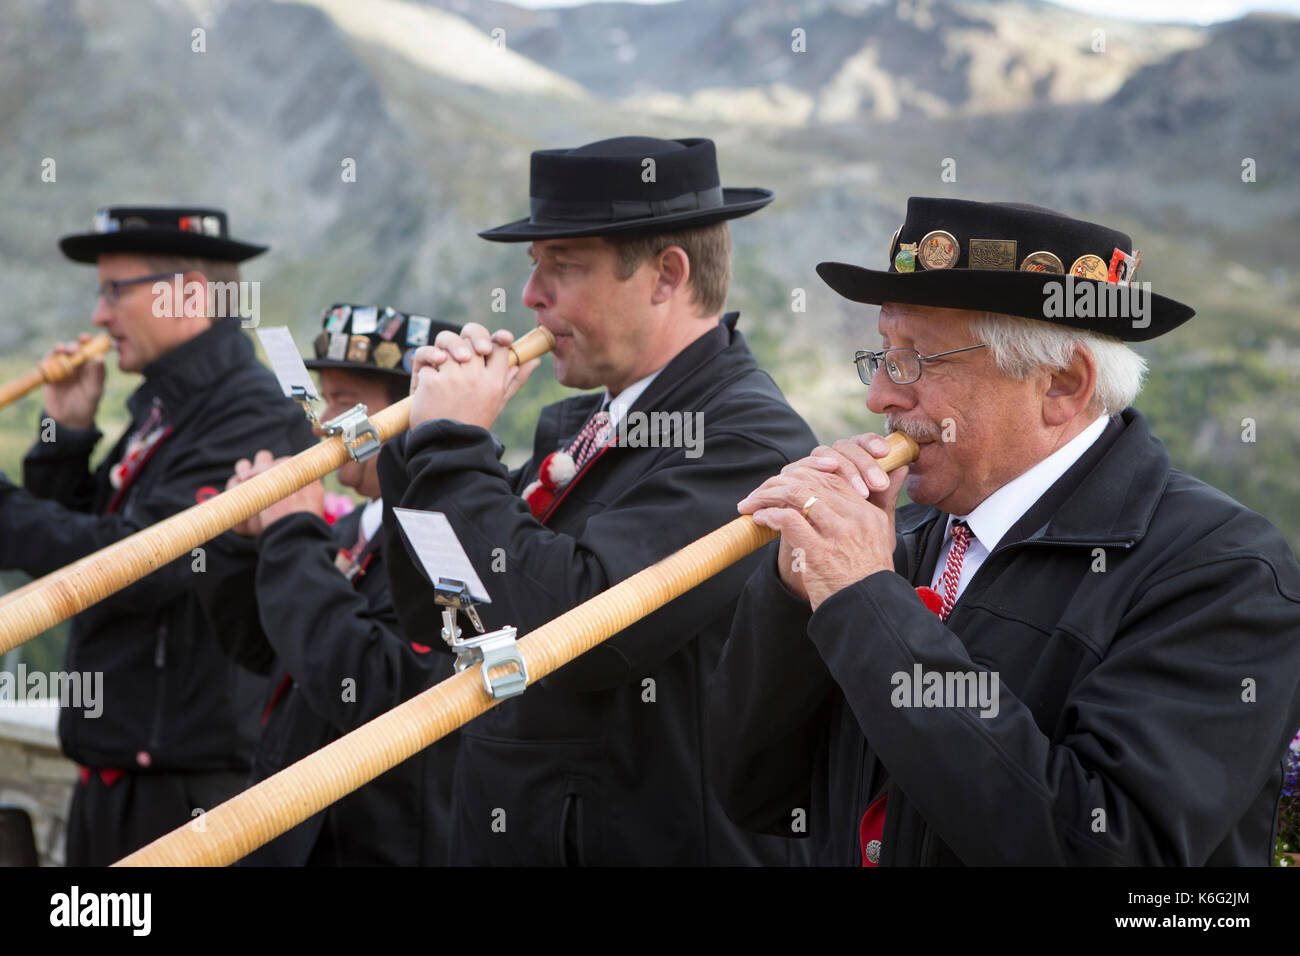 Cuatro lugareños jugando alphorn vestidos tradicionalmente, Zermatt, Valais, Suiza Foto de stock